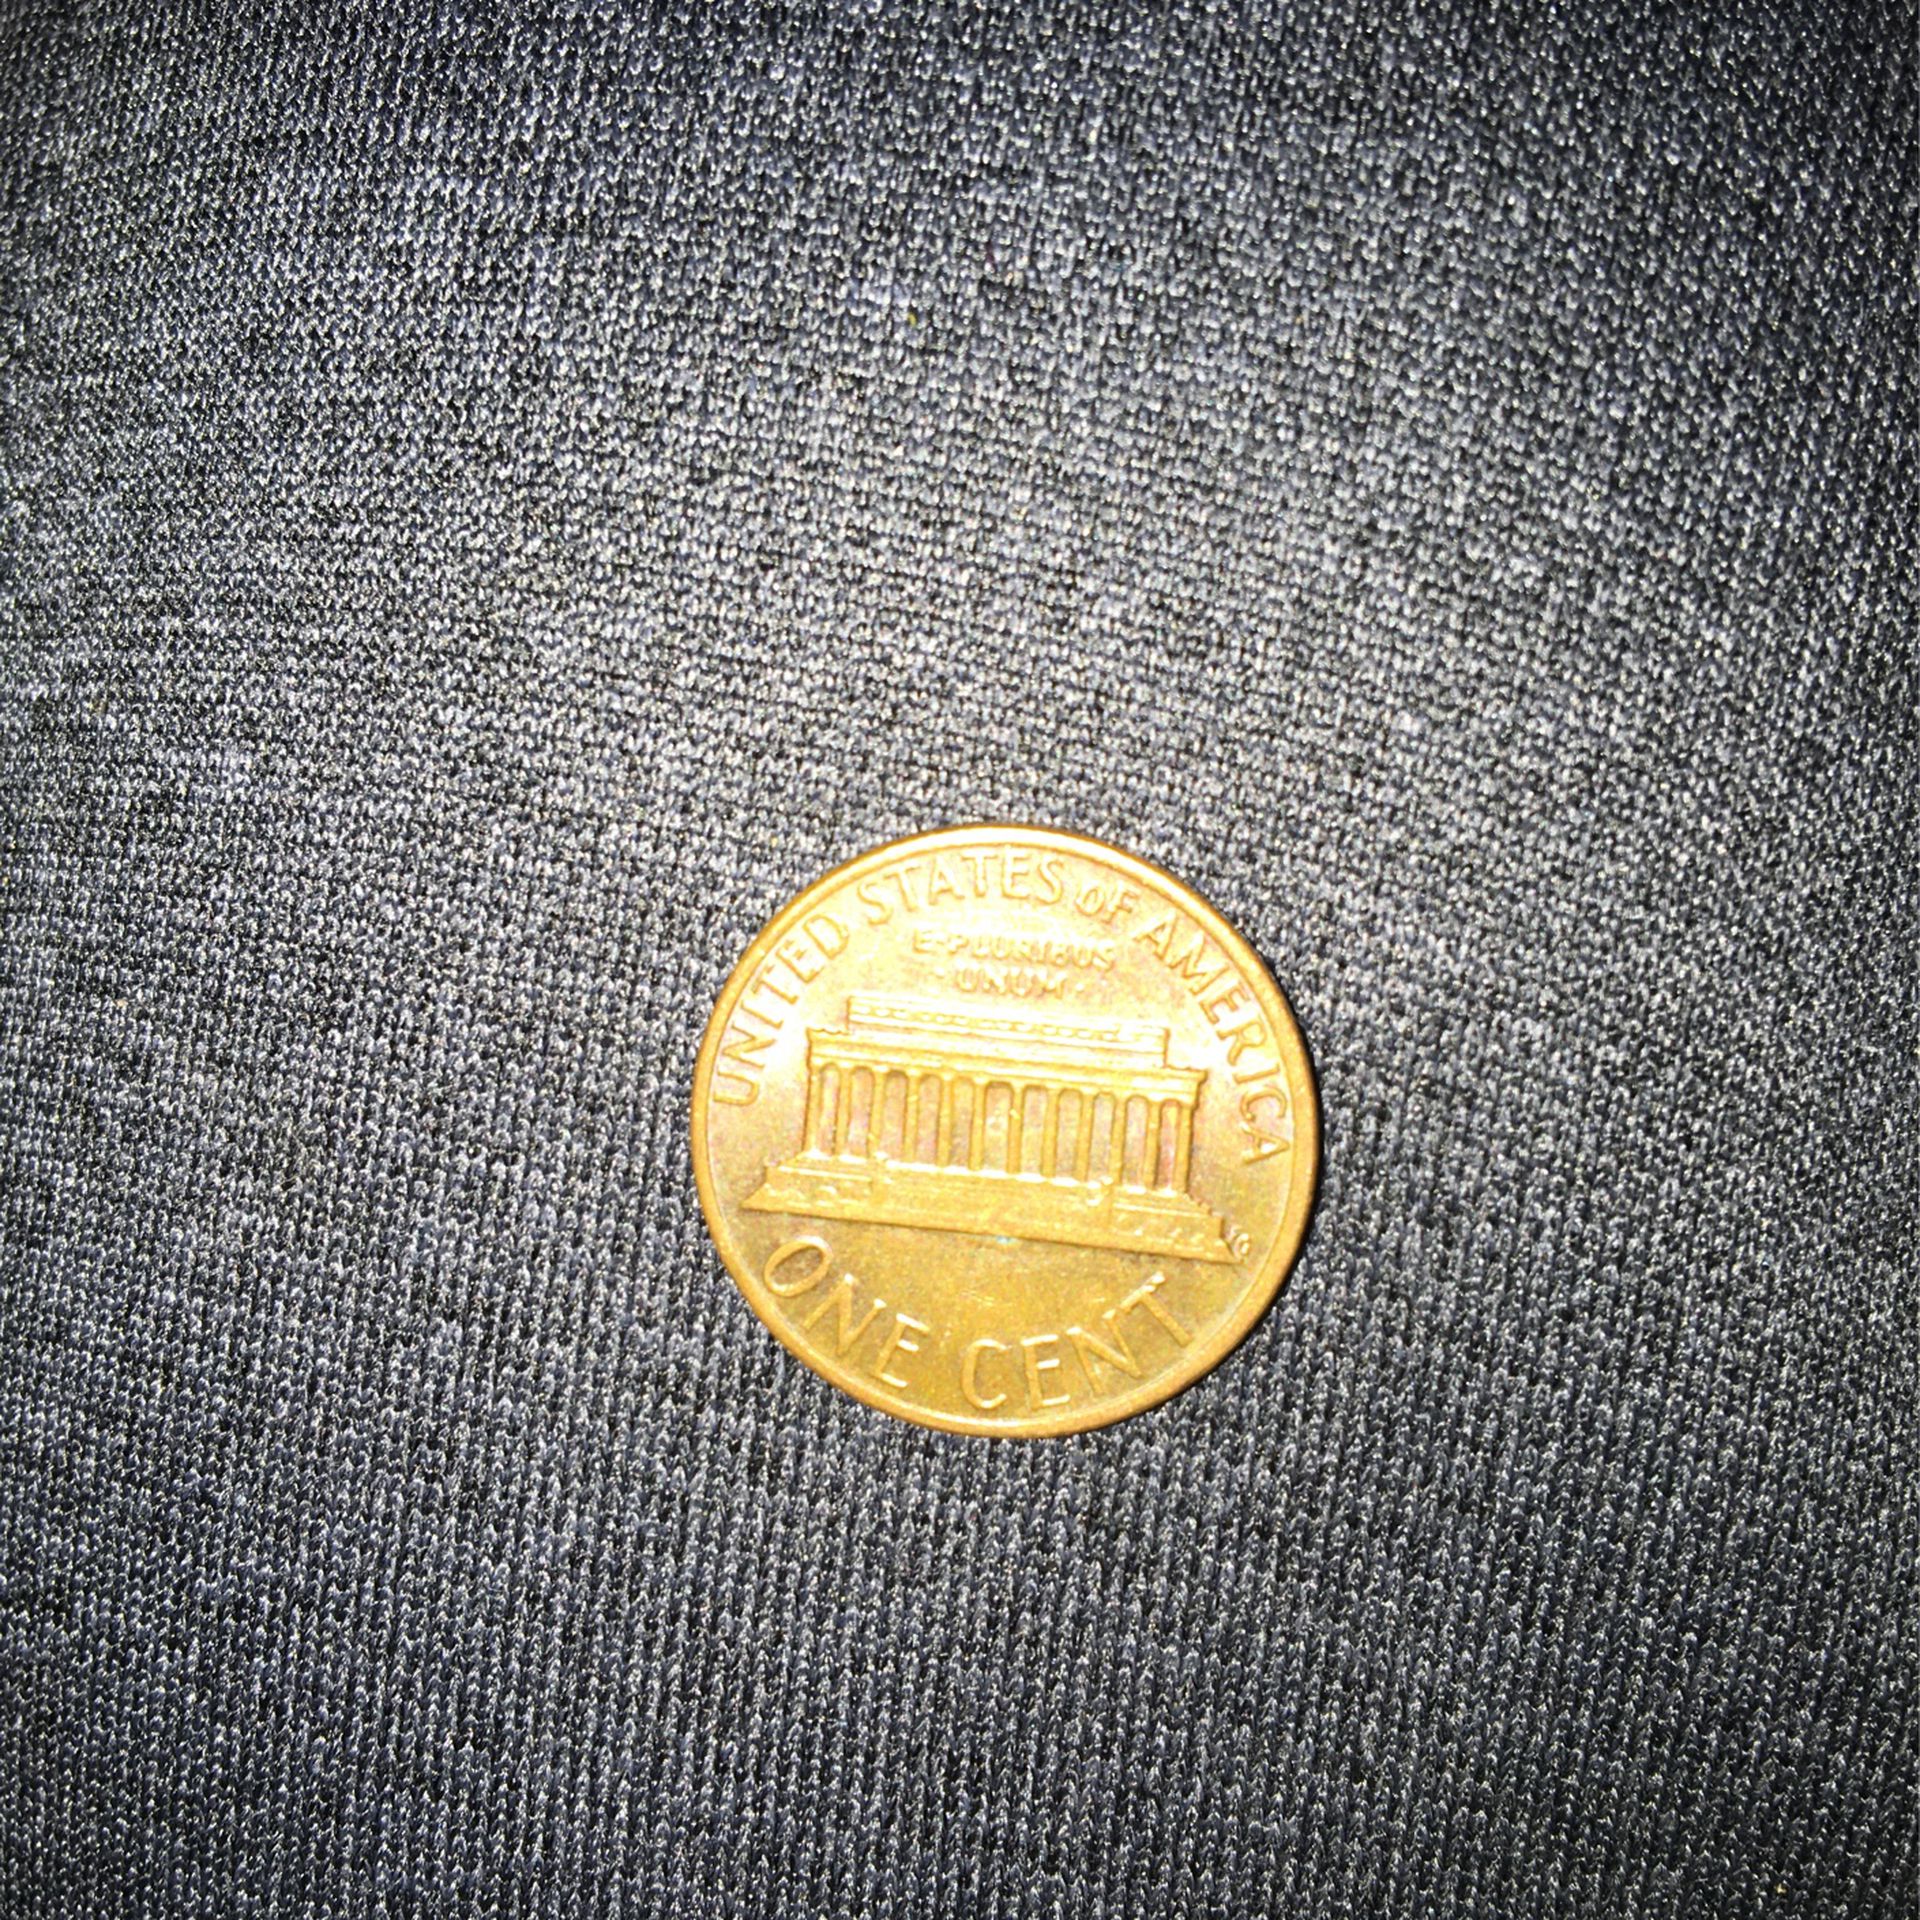 1980 No Mint Lincoln Penny Rare